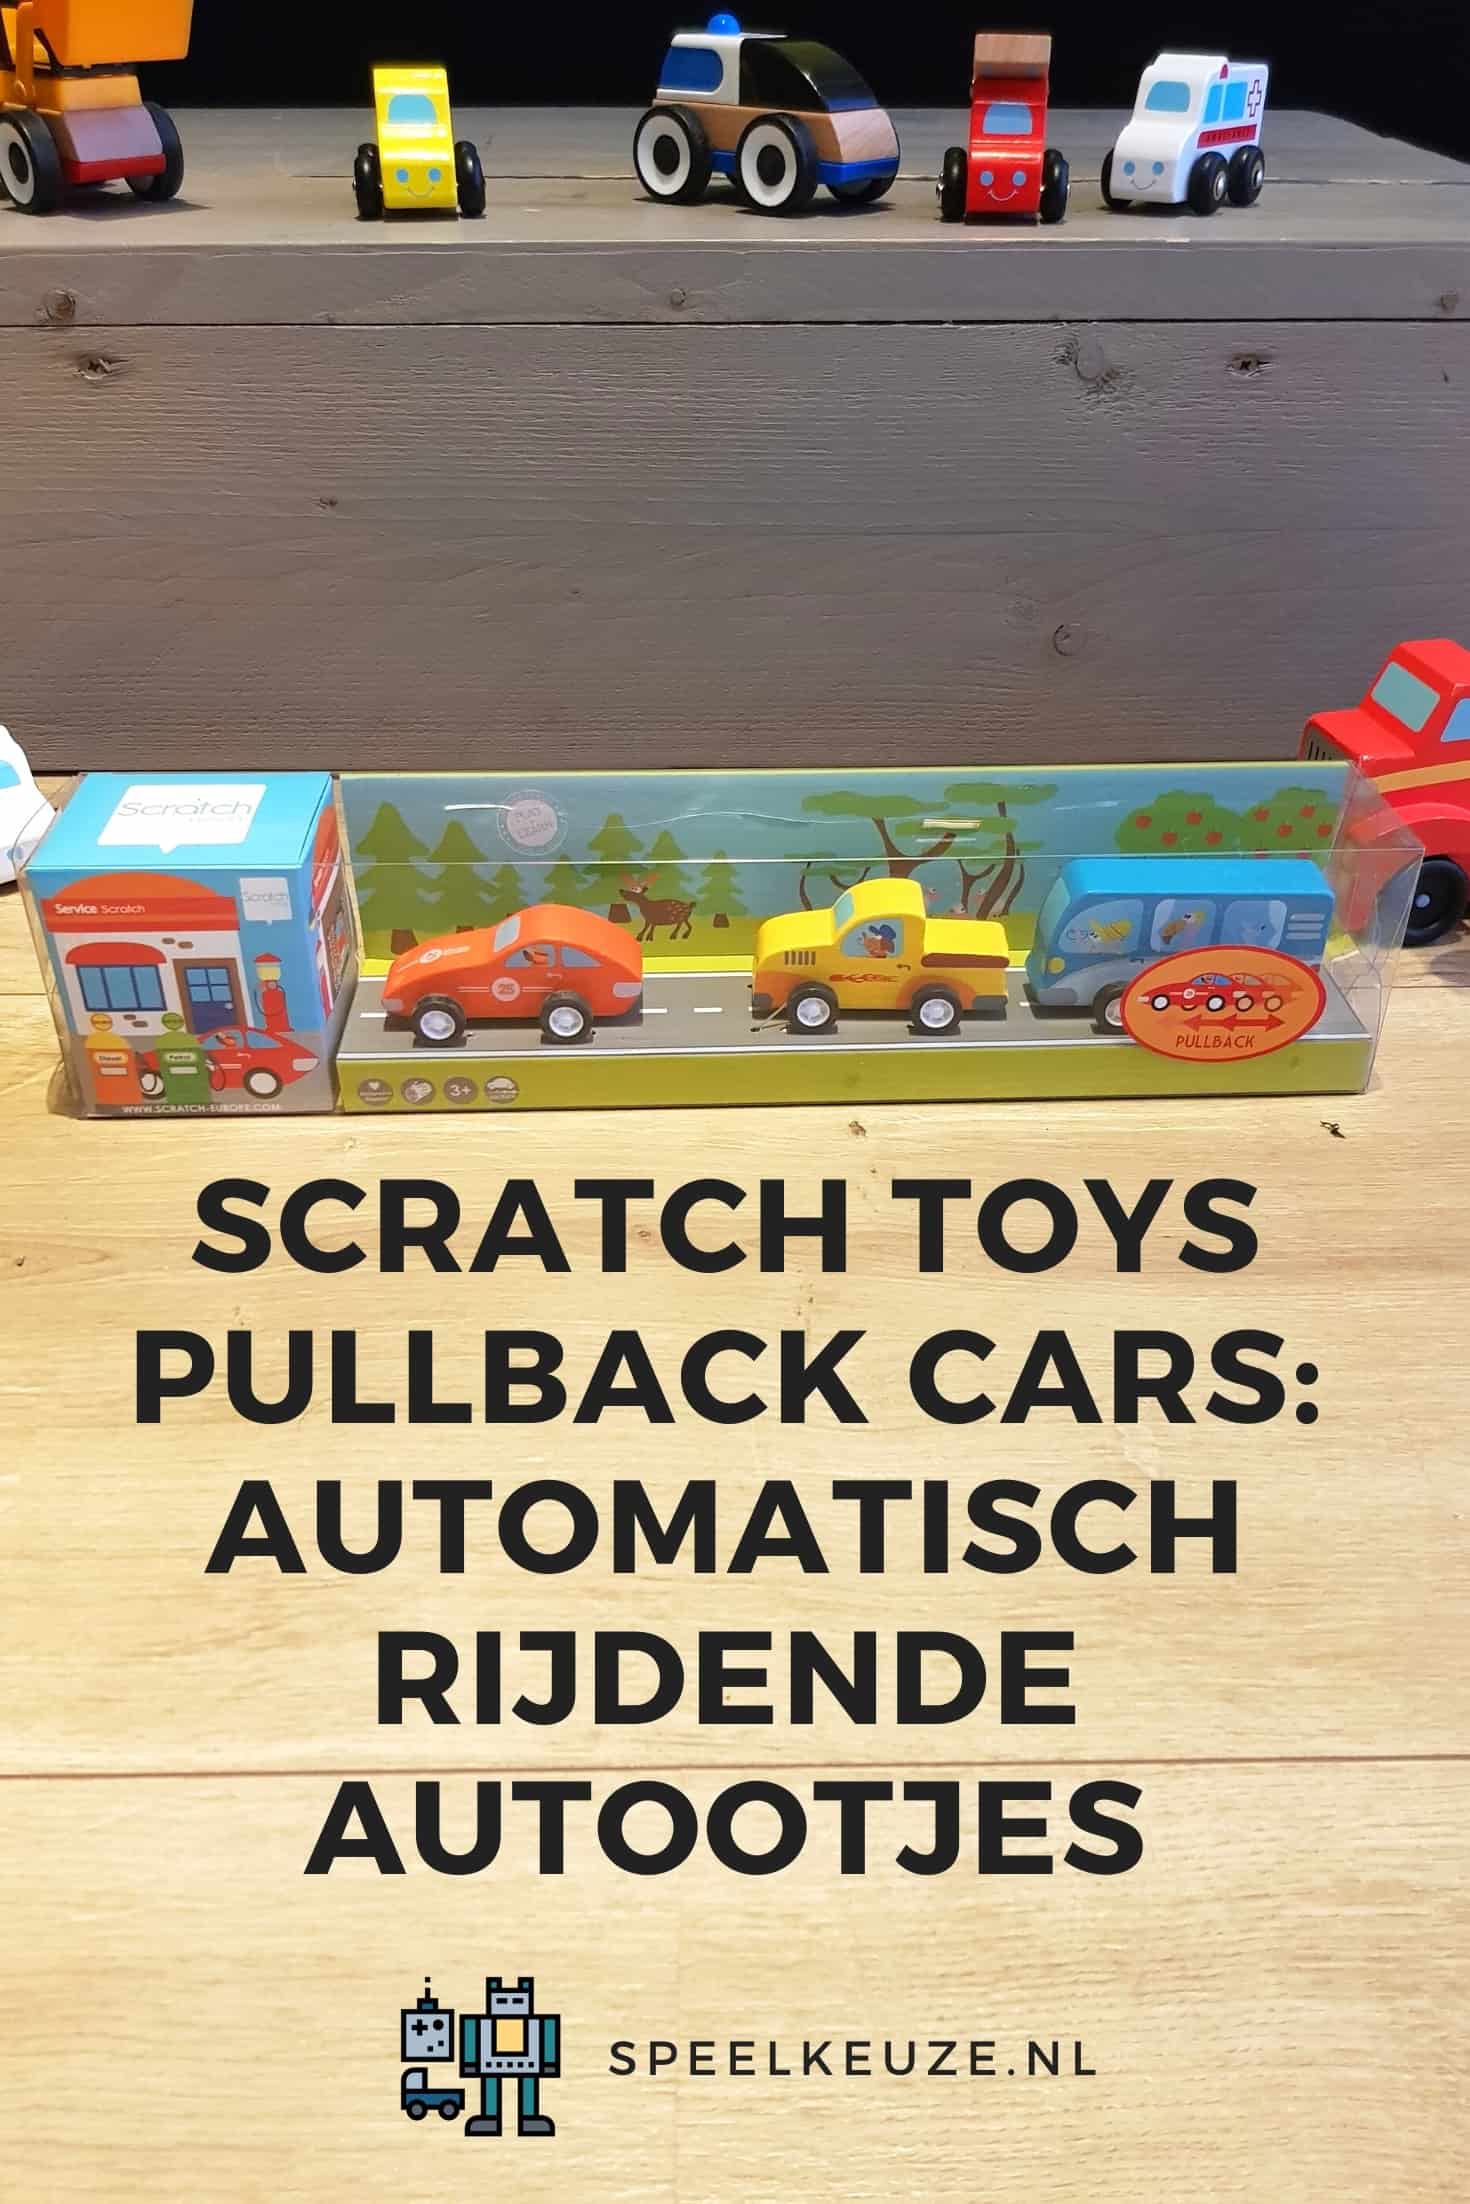 Scratch toys pullback cars: coches de conducción automática